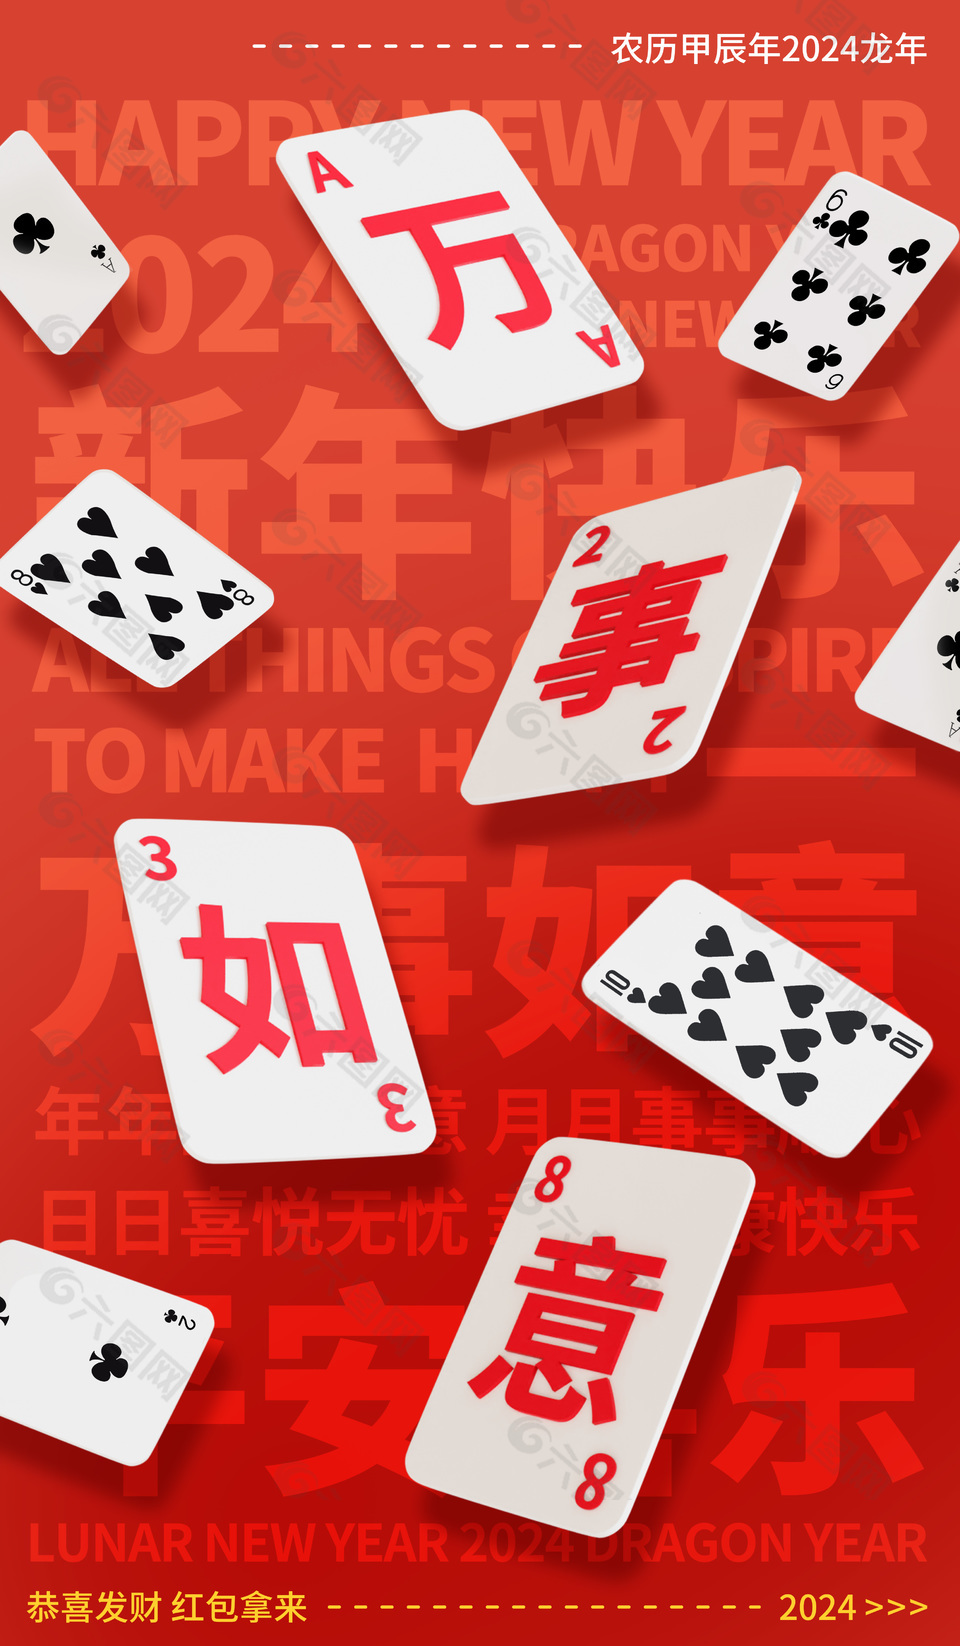 龙年万事如意创意扑克牌元素节日海报